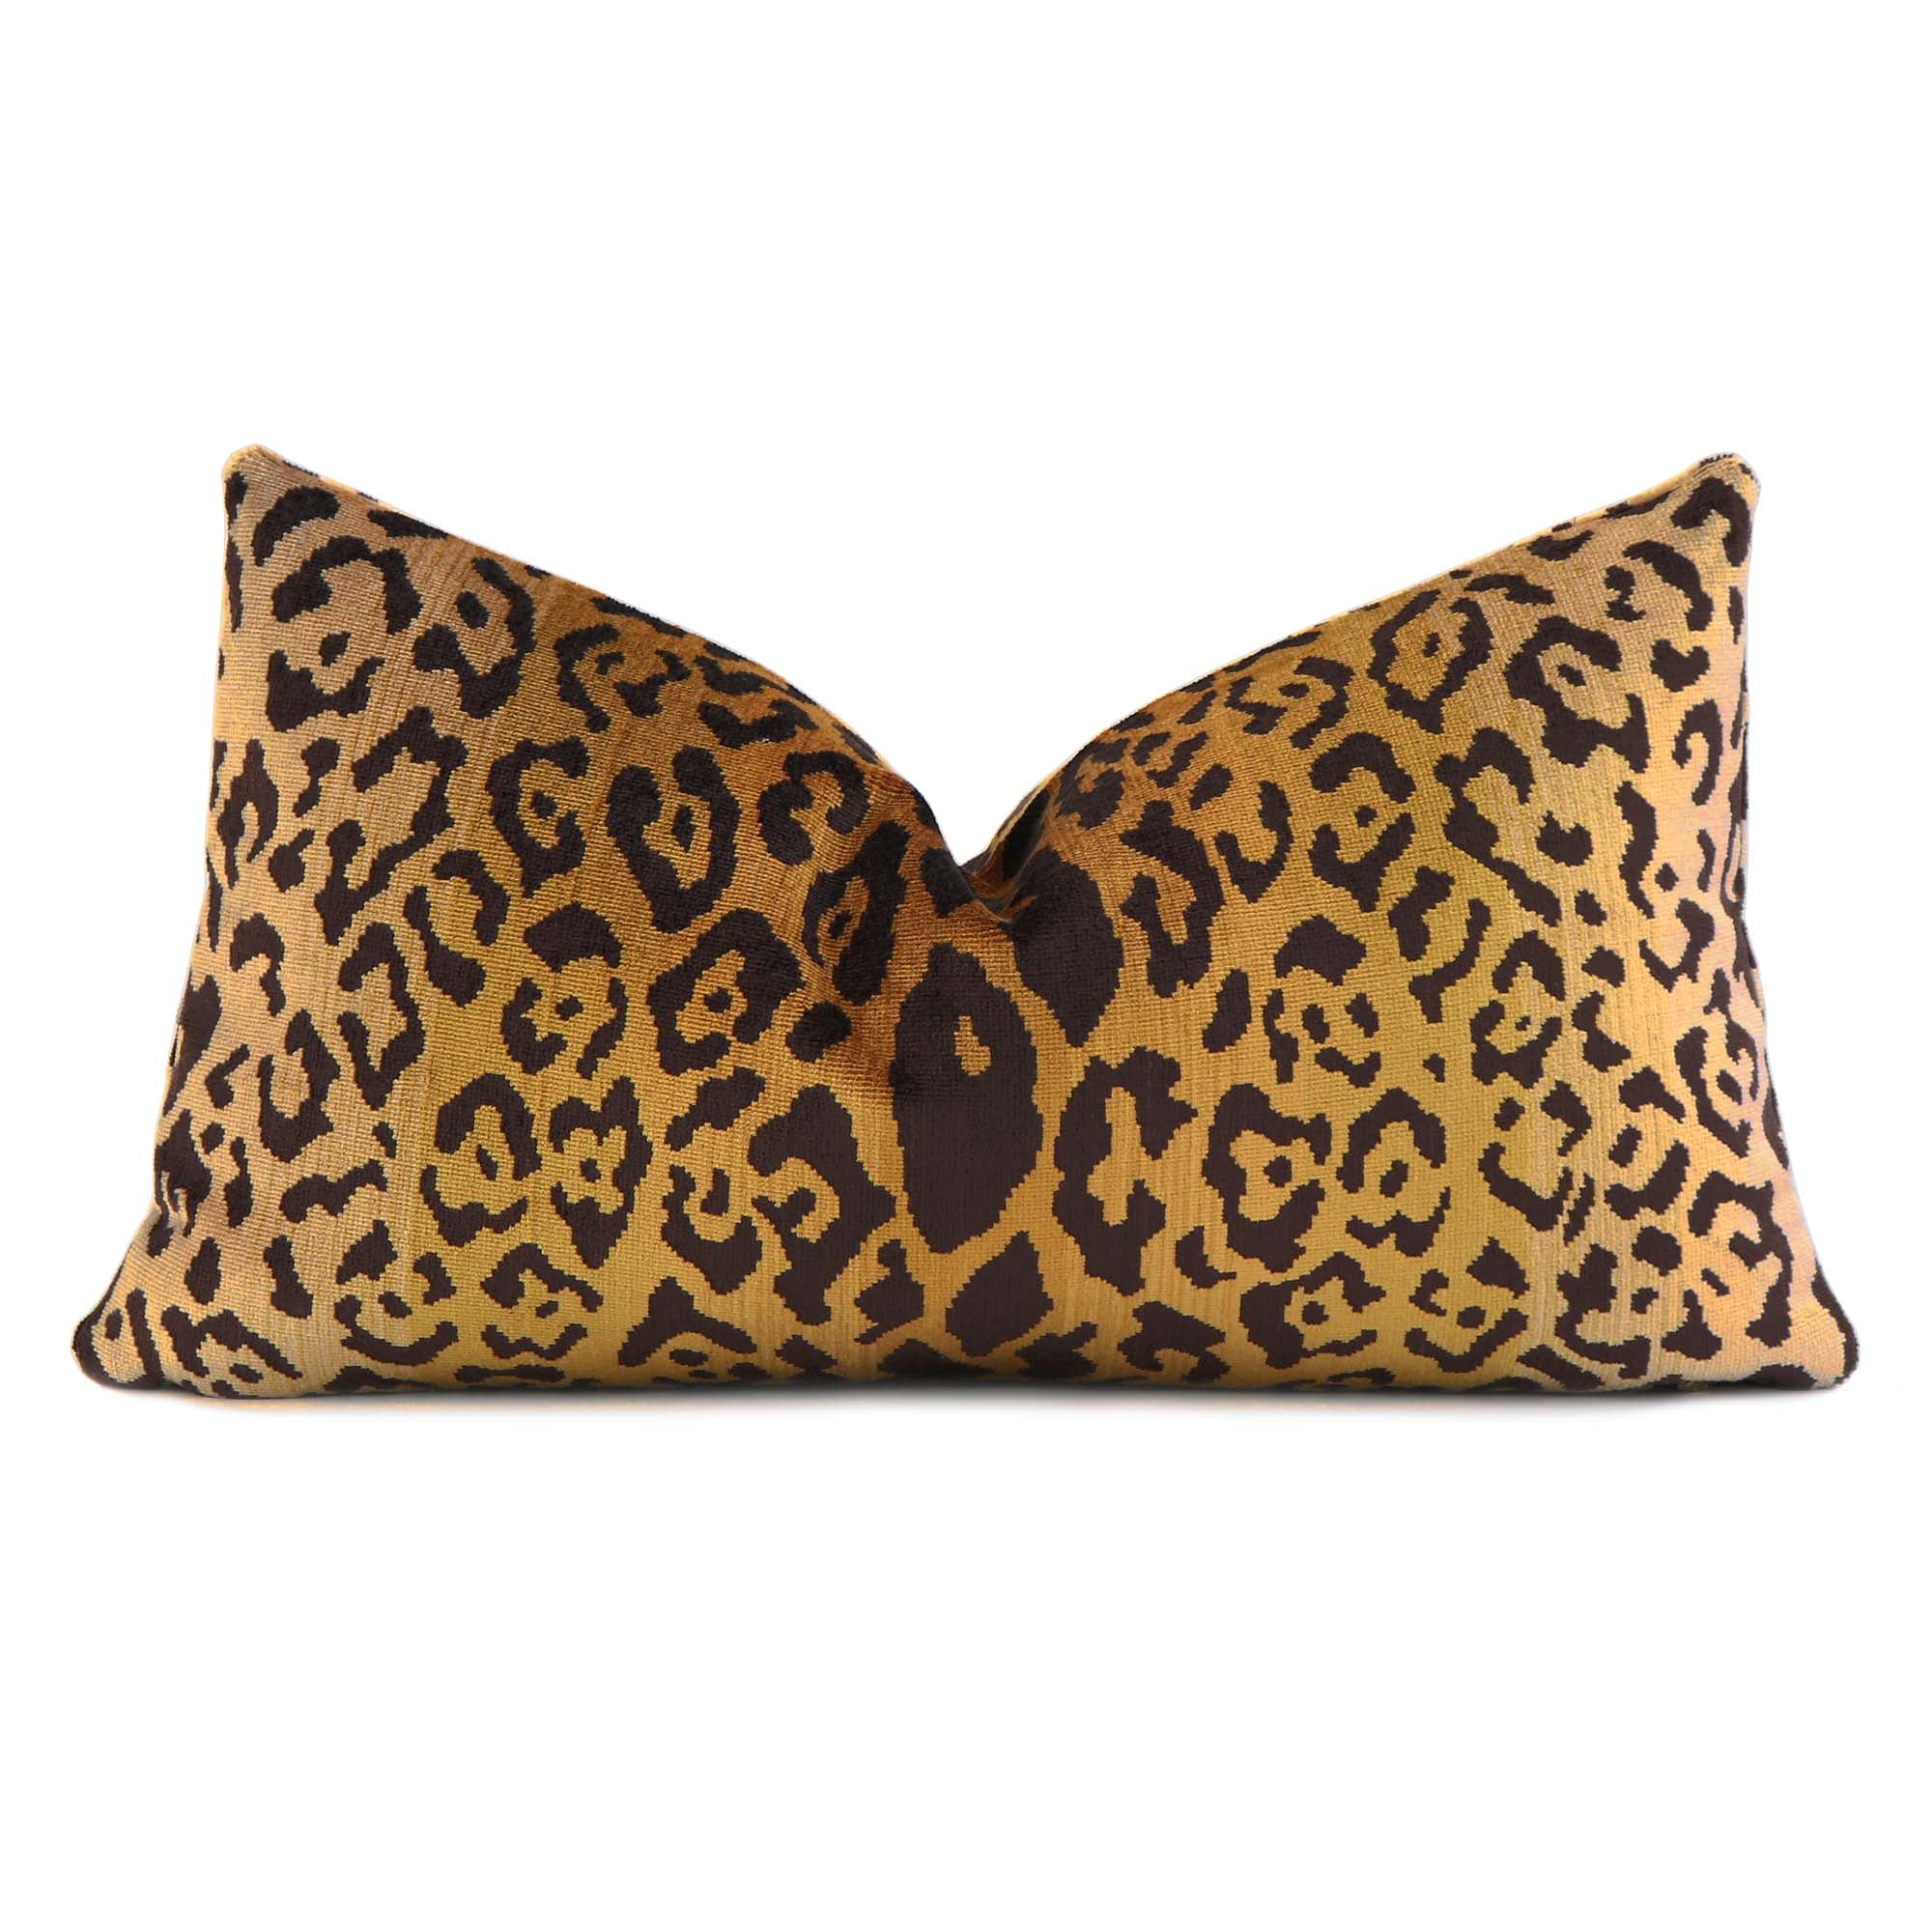 Scalamandre Leopardo Ivory Gold Black Silk Velvet Animal Skin Pattern Designer Lumbar Throw Pillow Cover